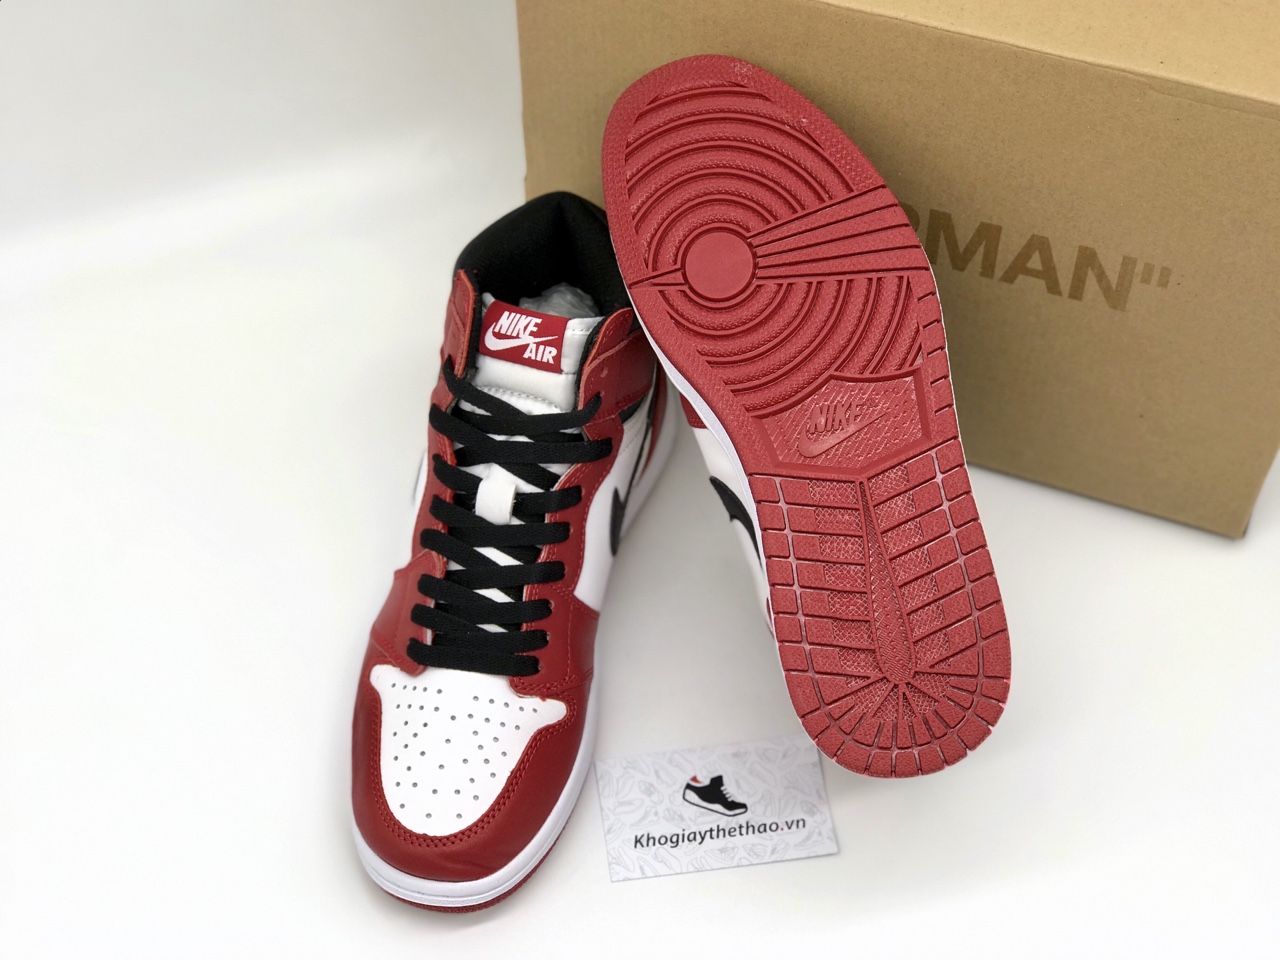 Nike Air Jordan 1 Retro Chicago rep